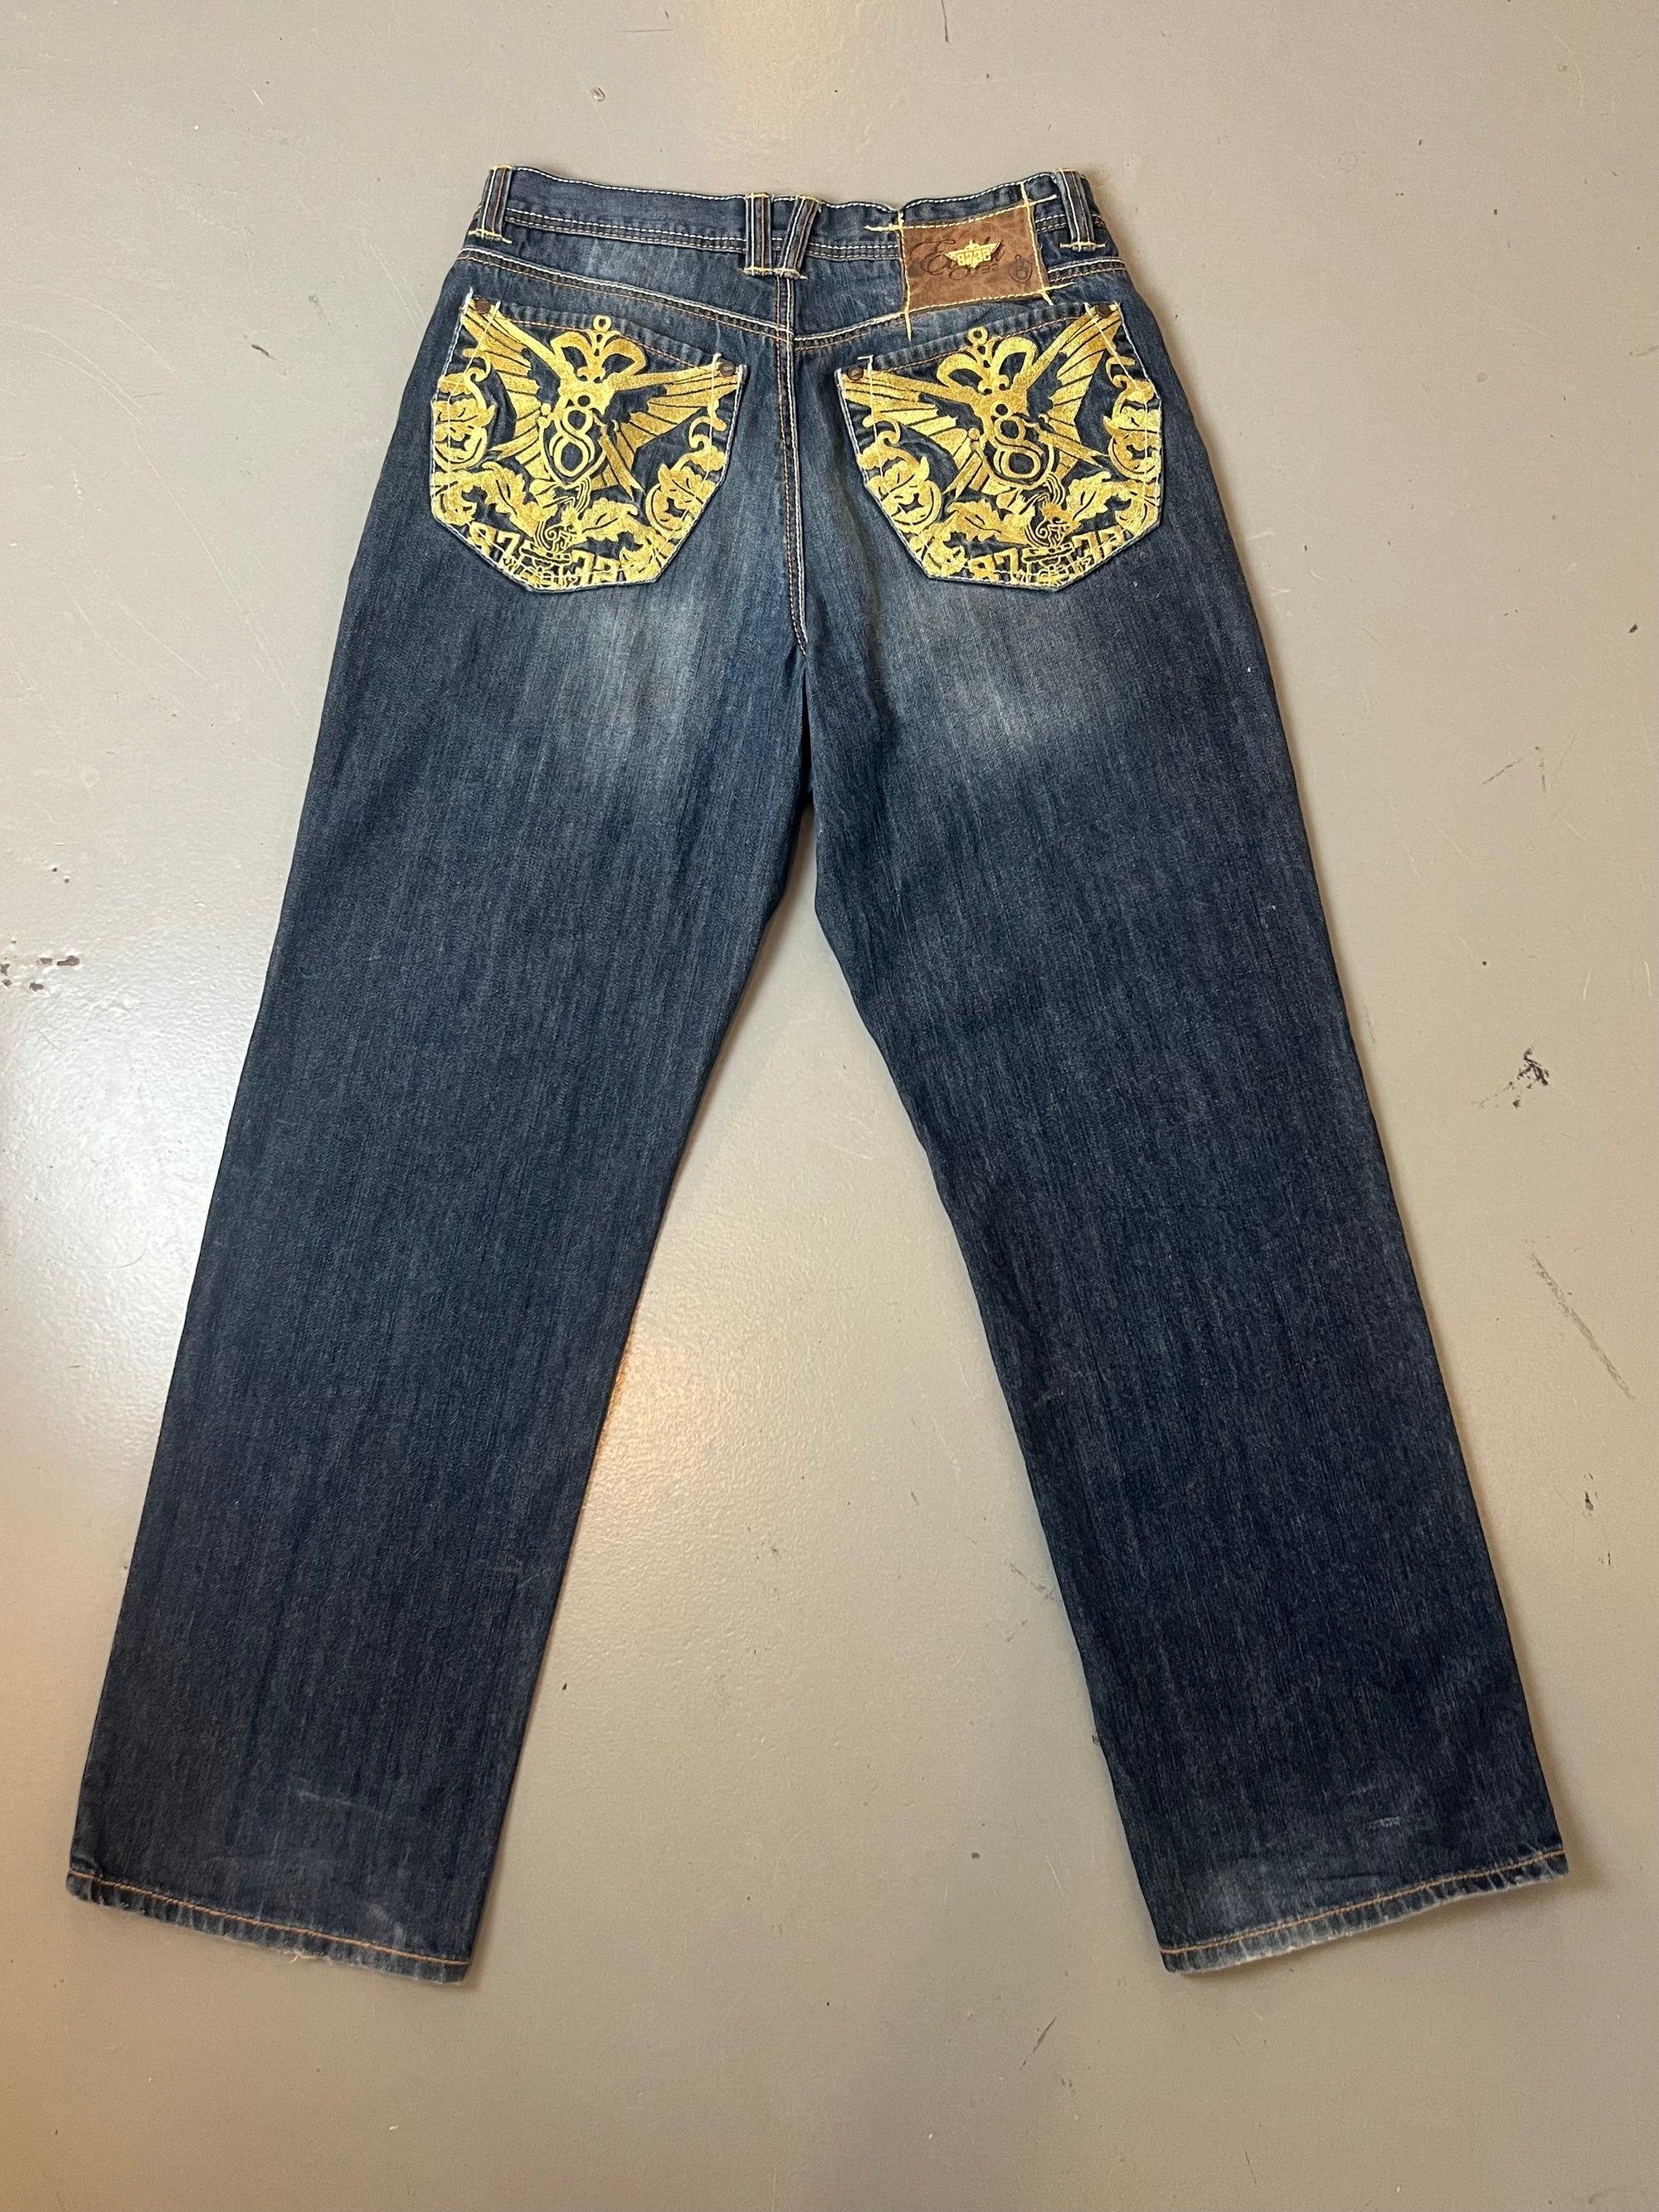 Zu sehen ist eine Vintage Baggy Ed Hardy Jeans vor einem grauen Hintergrund